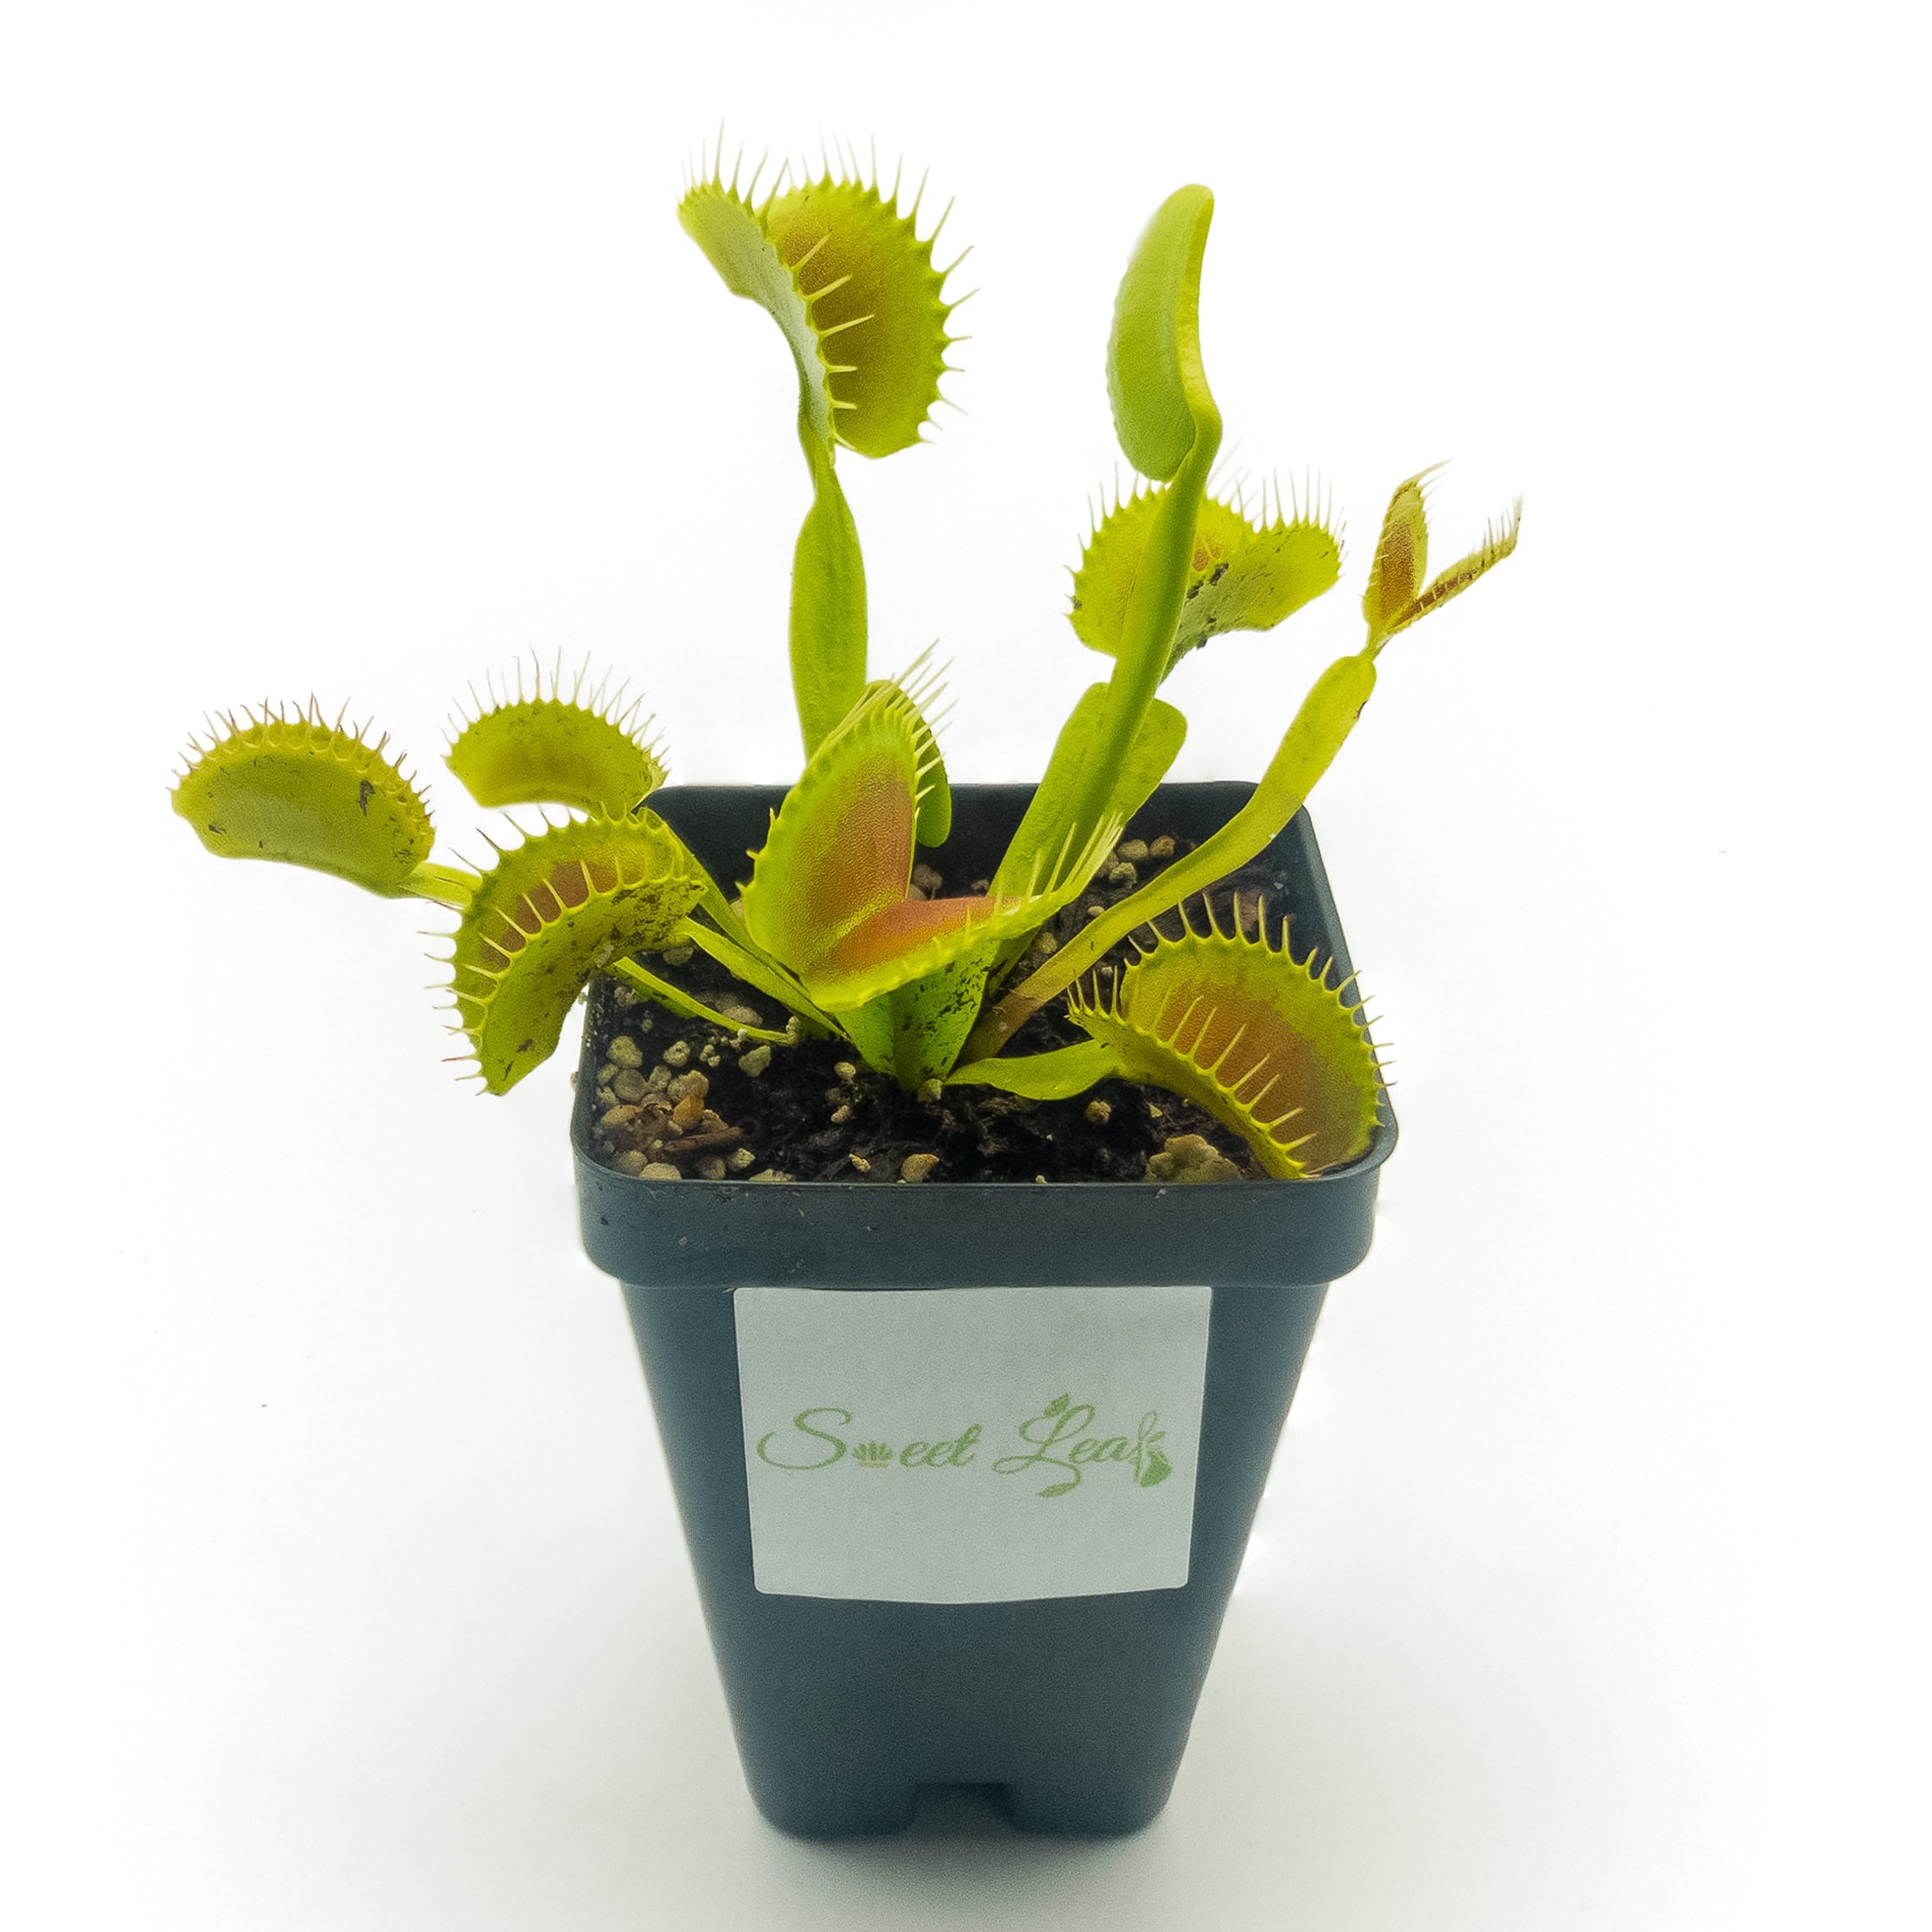 Venus Flytrap Facts (Dionaea muscipula)